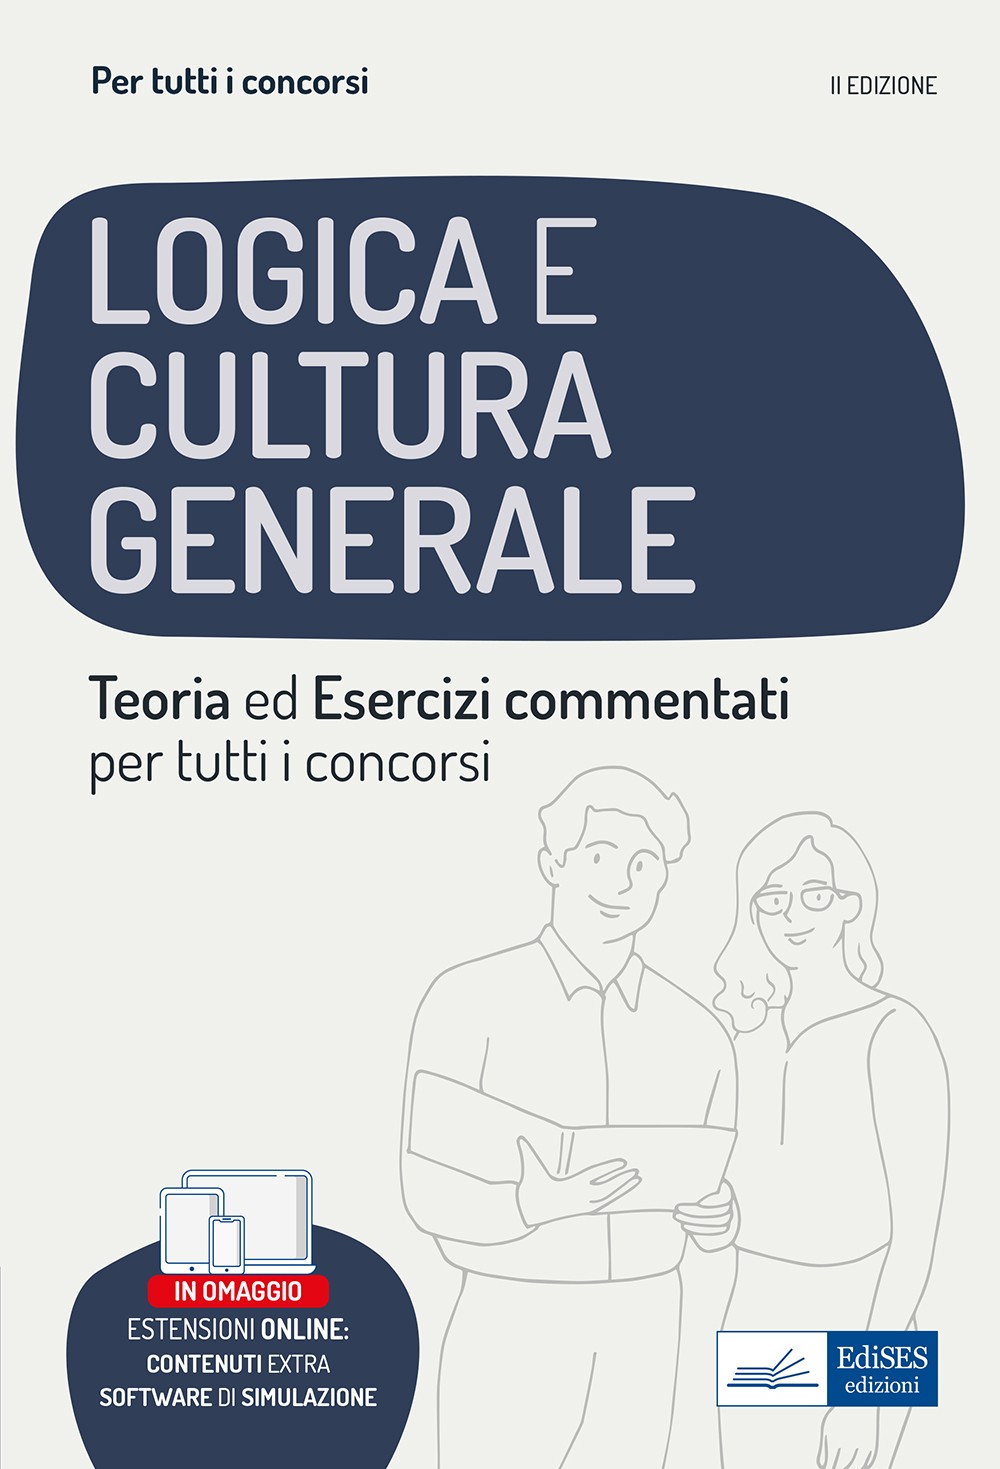 Logica e cultura generale - Teoria ed esercizi commentati - Manuale completo per tutti i concorsi - Librerie.coop